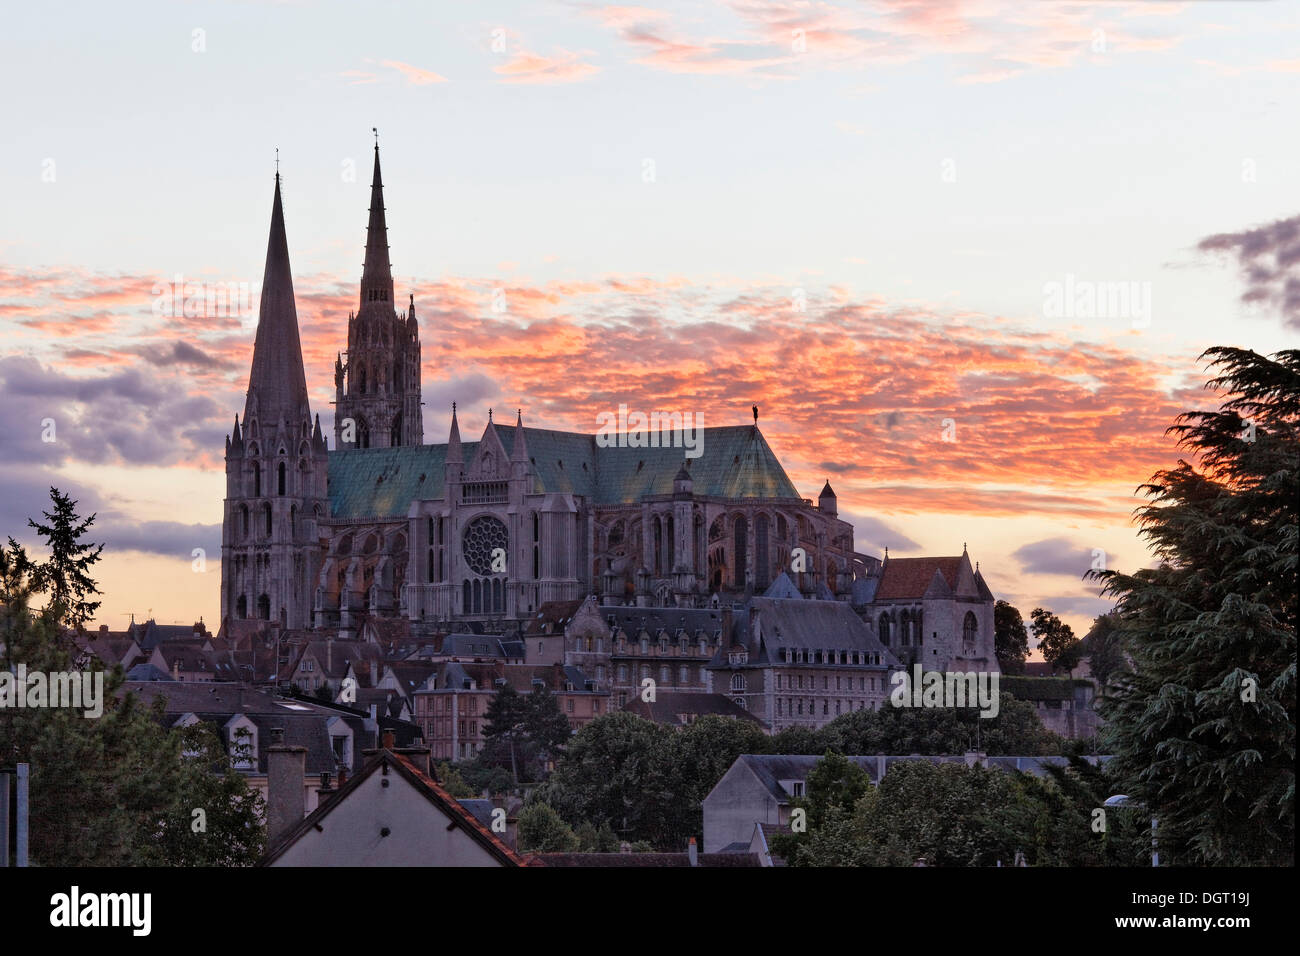 La cathédrale de Chartres, région Ile de France, département de l'Eure-et-Loir, France, Europe Banque D'Images